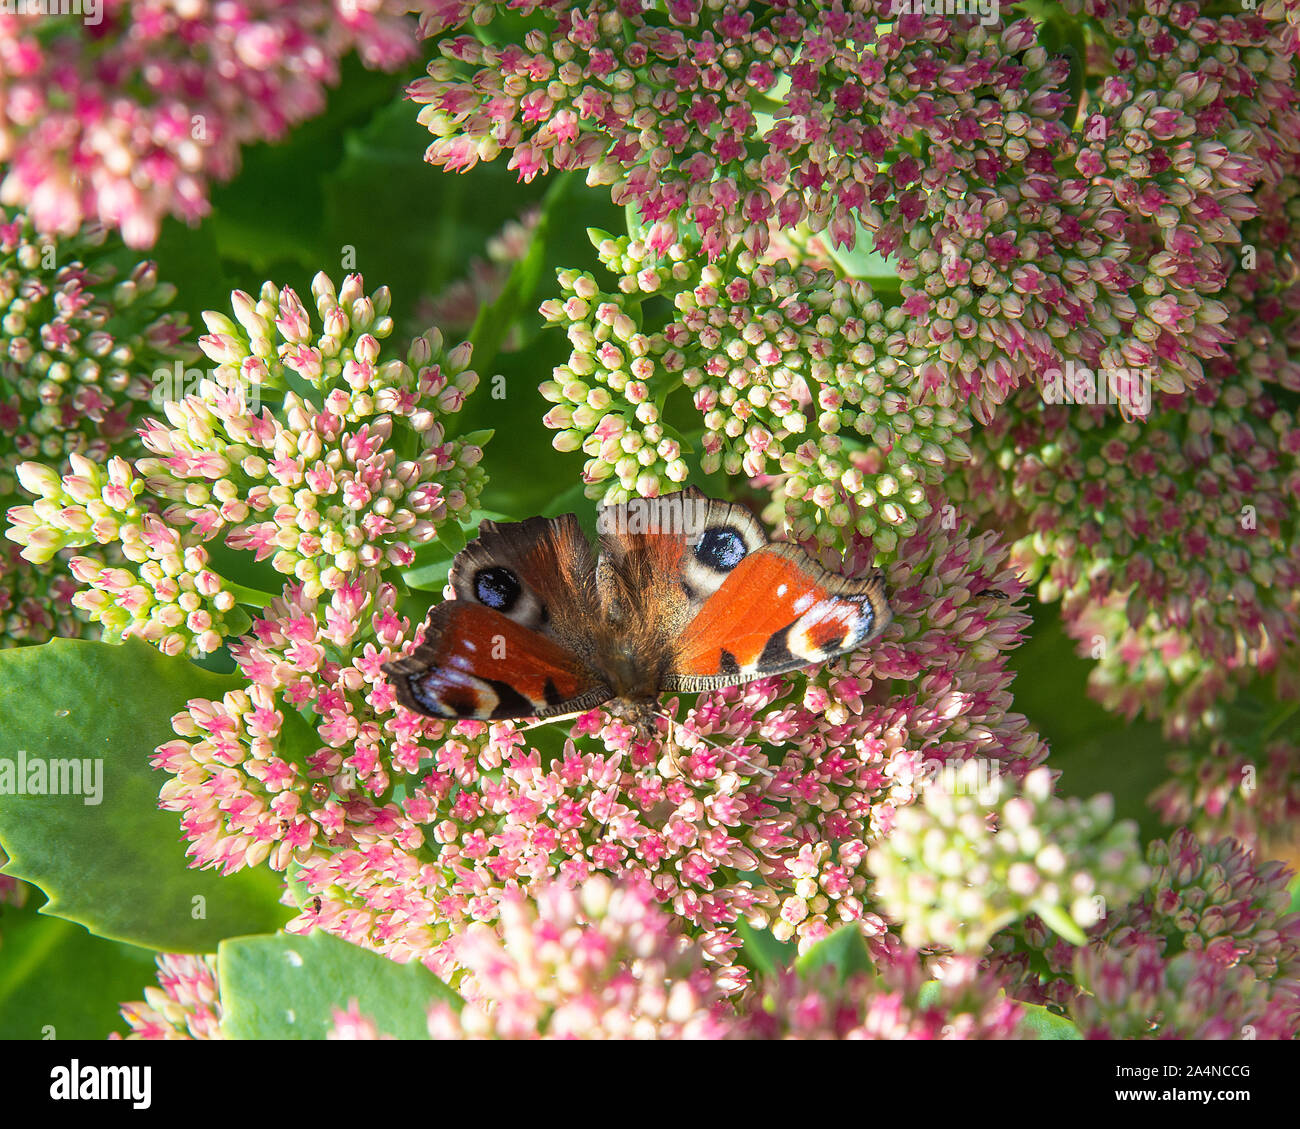 Un magnifique papillon de paon se nourrissante sur Nectar sur une joie d'automne de tête de fleur de Sedum dans un jardin à Sawdon North Yorkshire Angleterre Royaume-Uni Banque D'Images